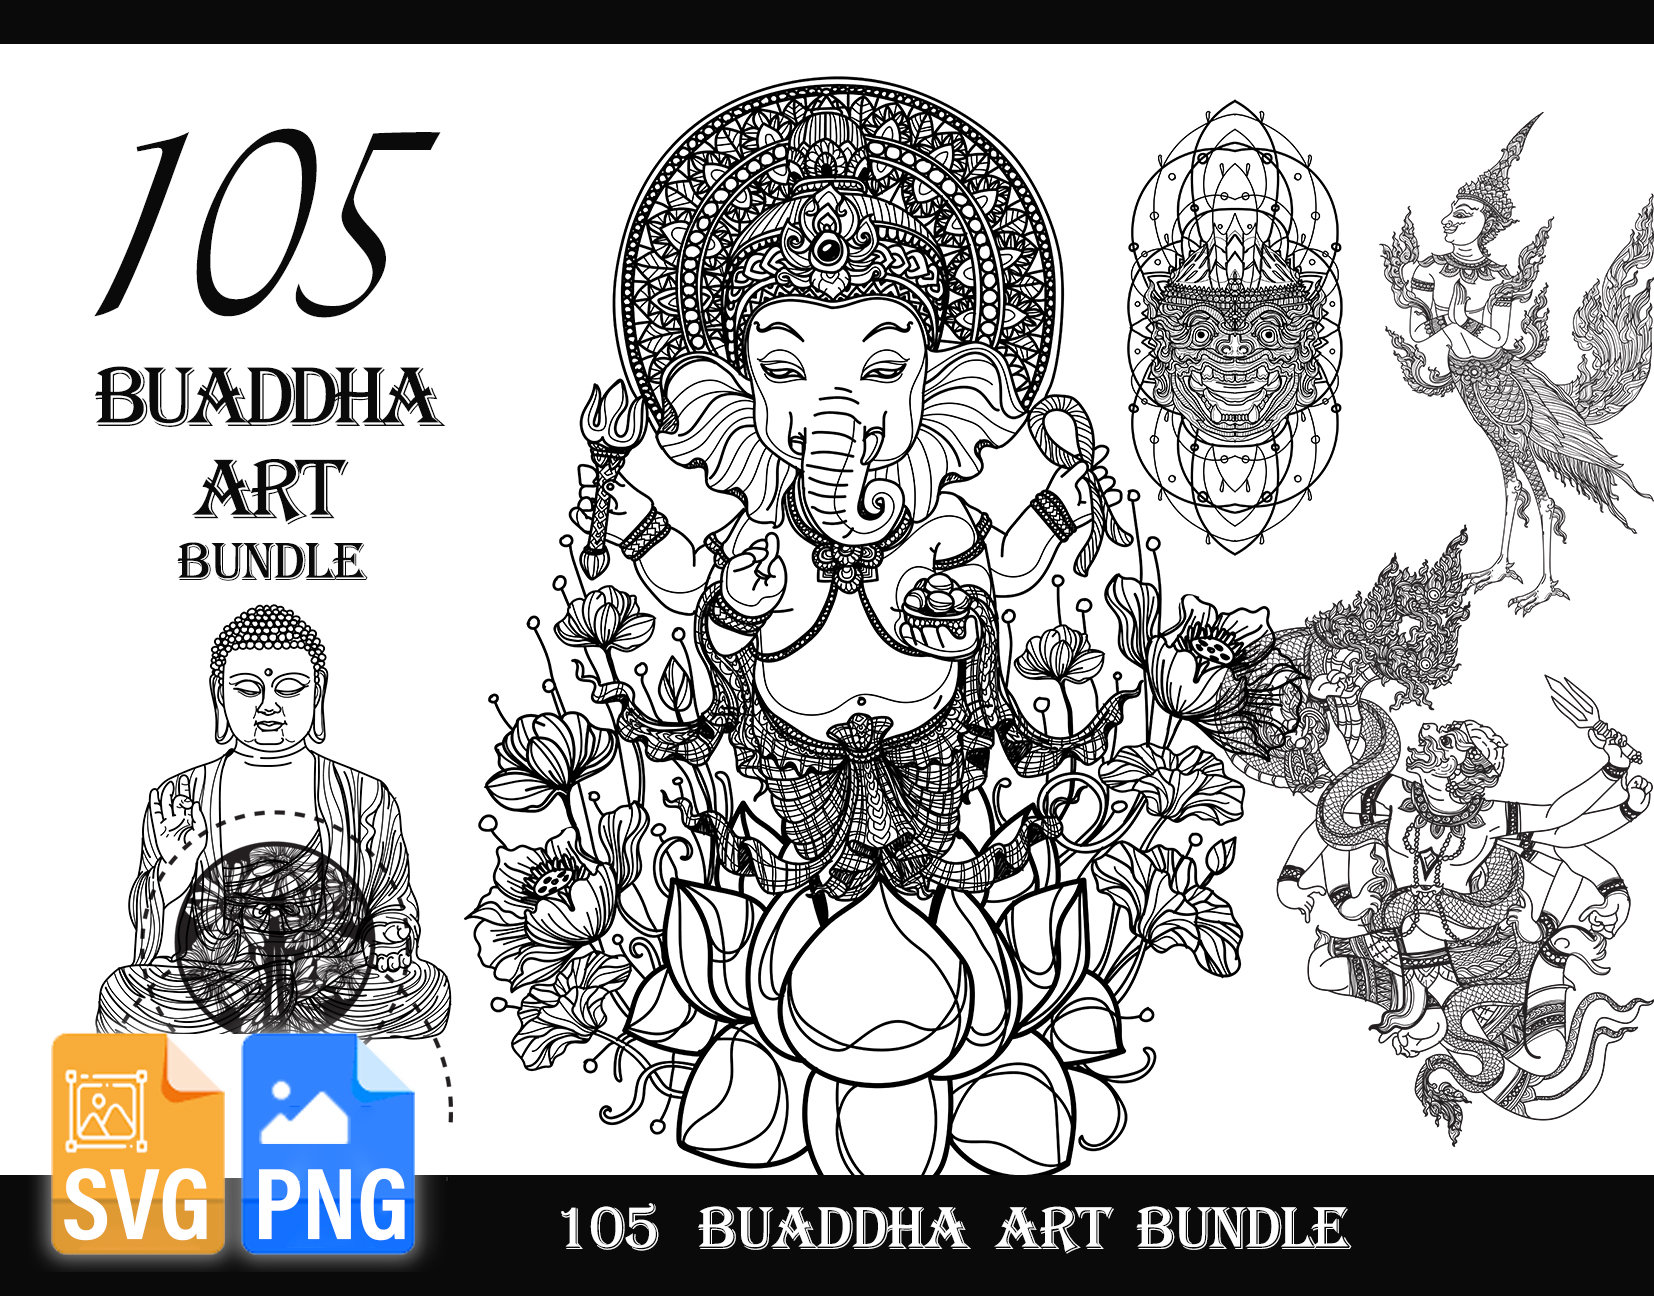 how to draw lord buddha easy pencil sketch drawingeasy pencil art gautam  buddhagowthama buddha   YouTube